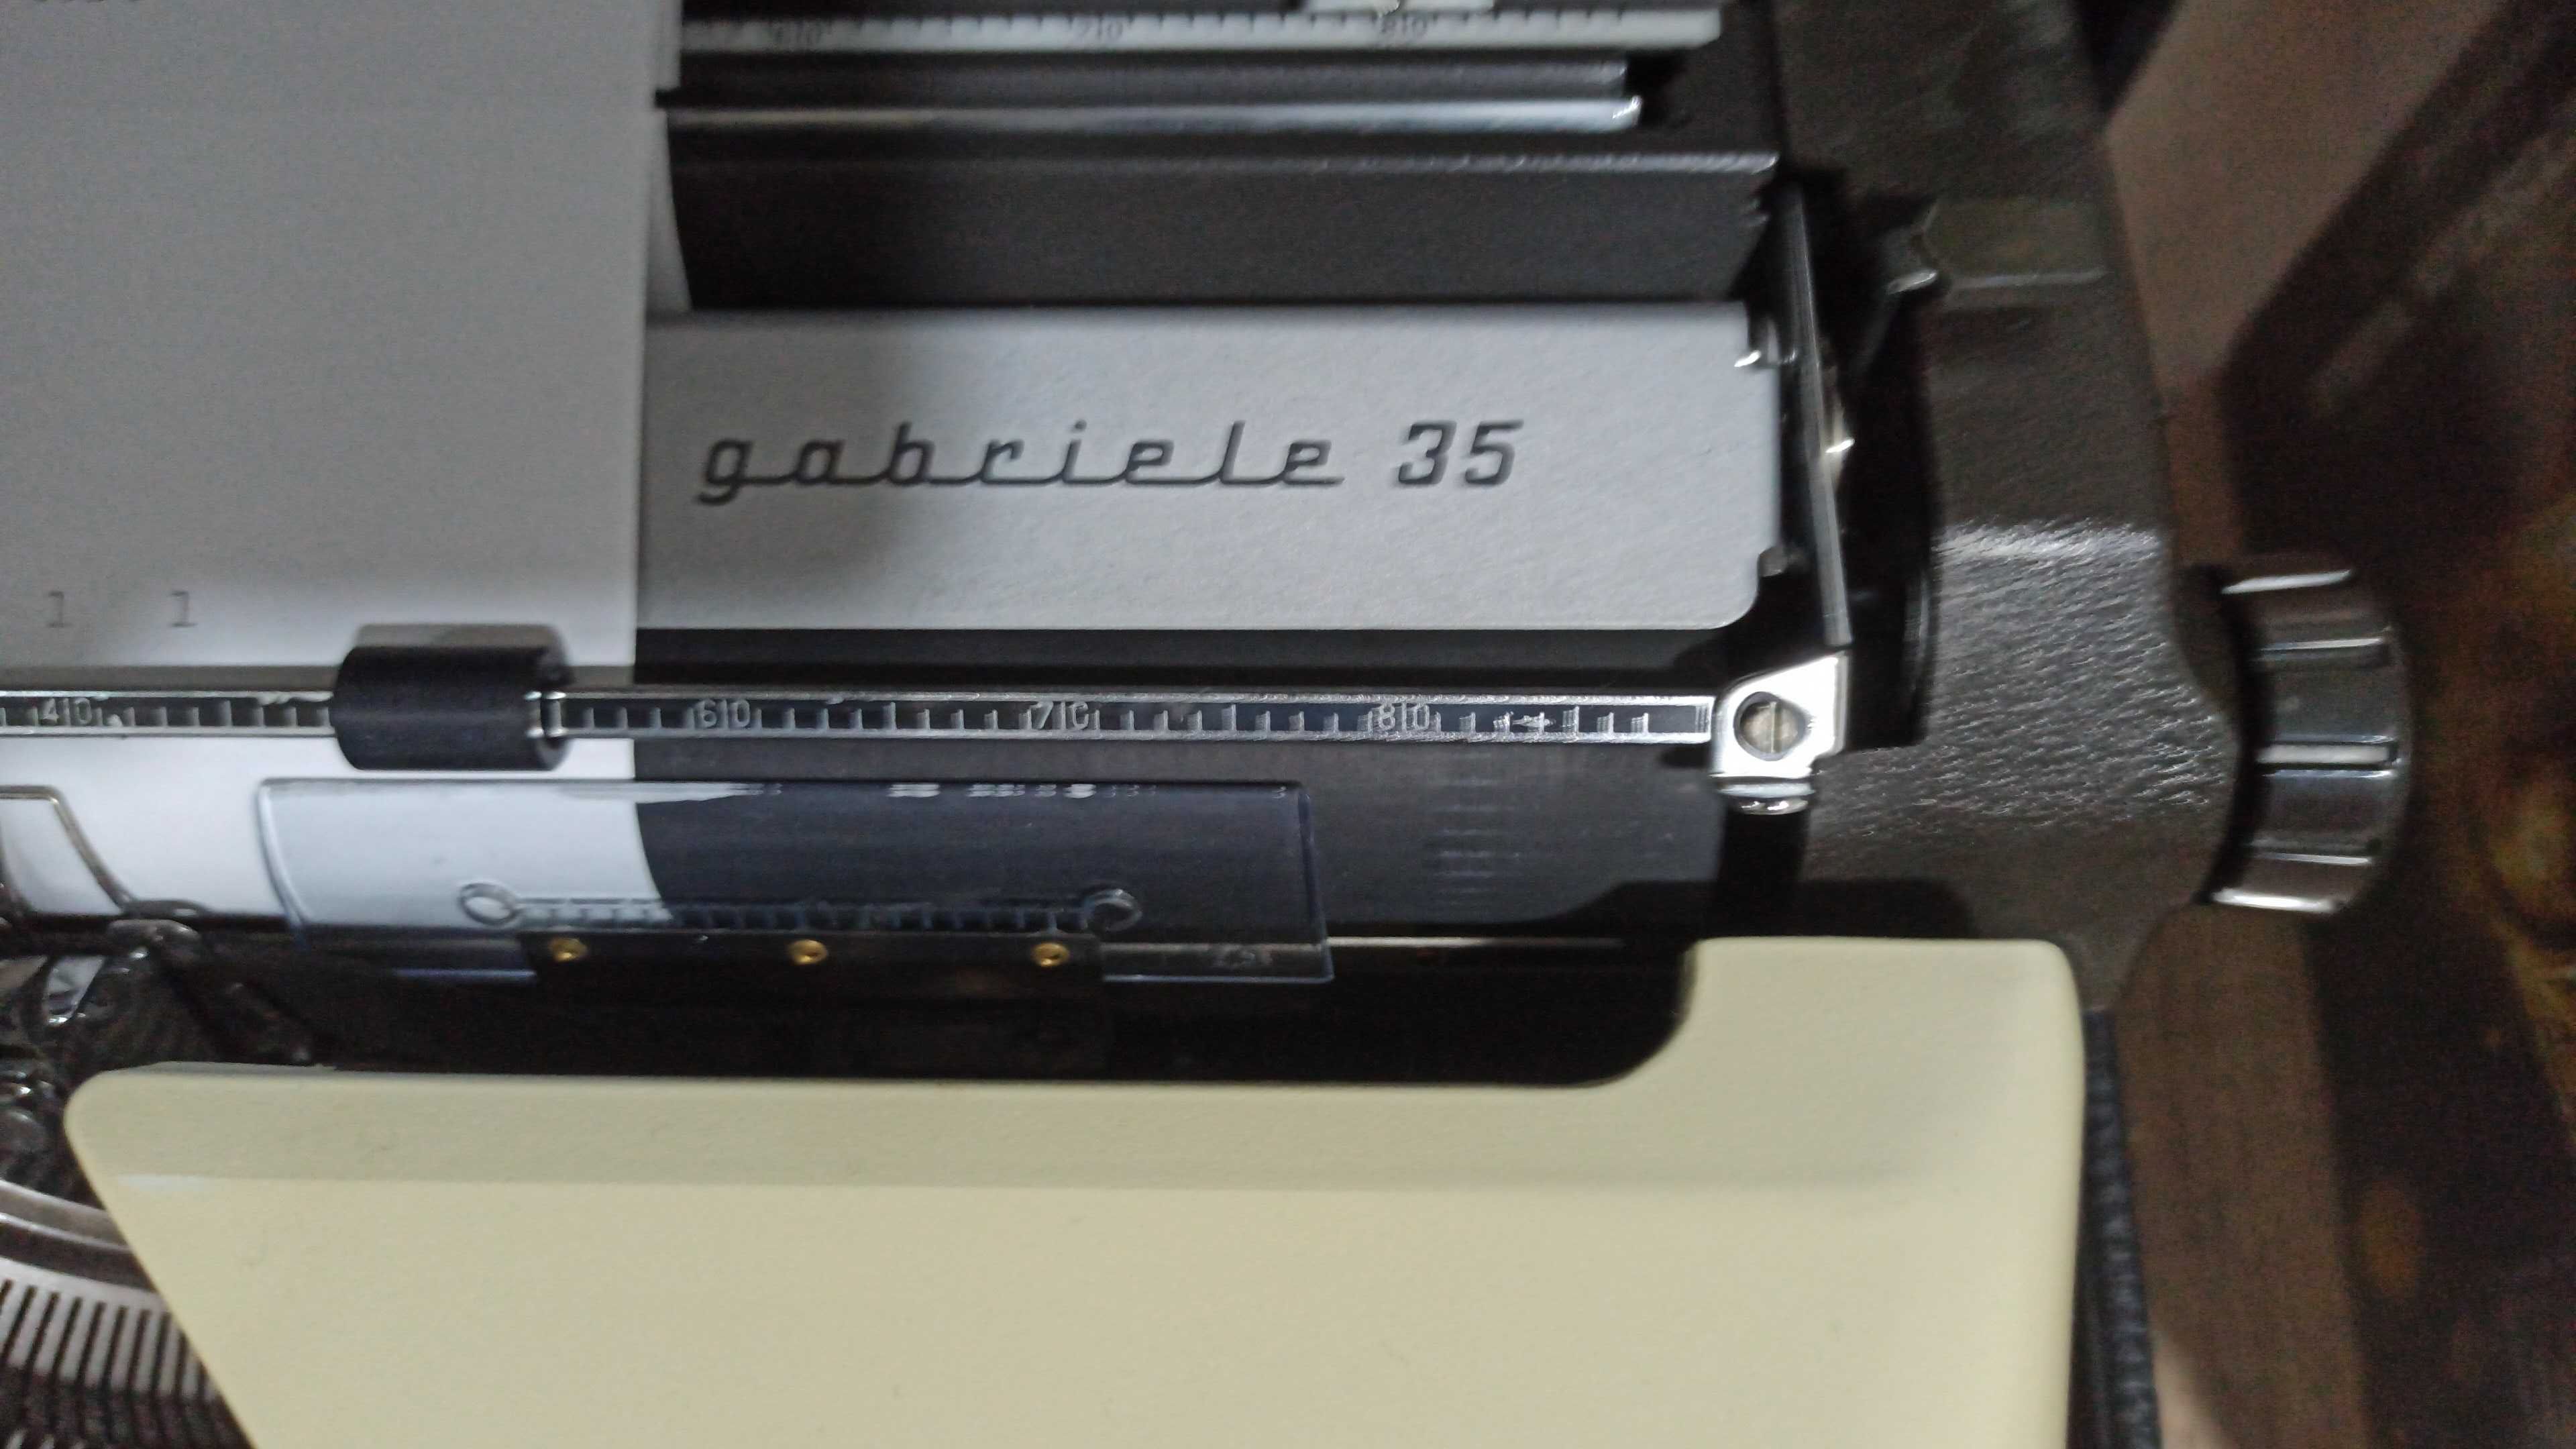 Masina de scris Triumph Gabriele 35